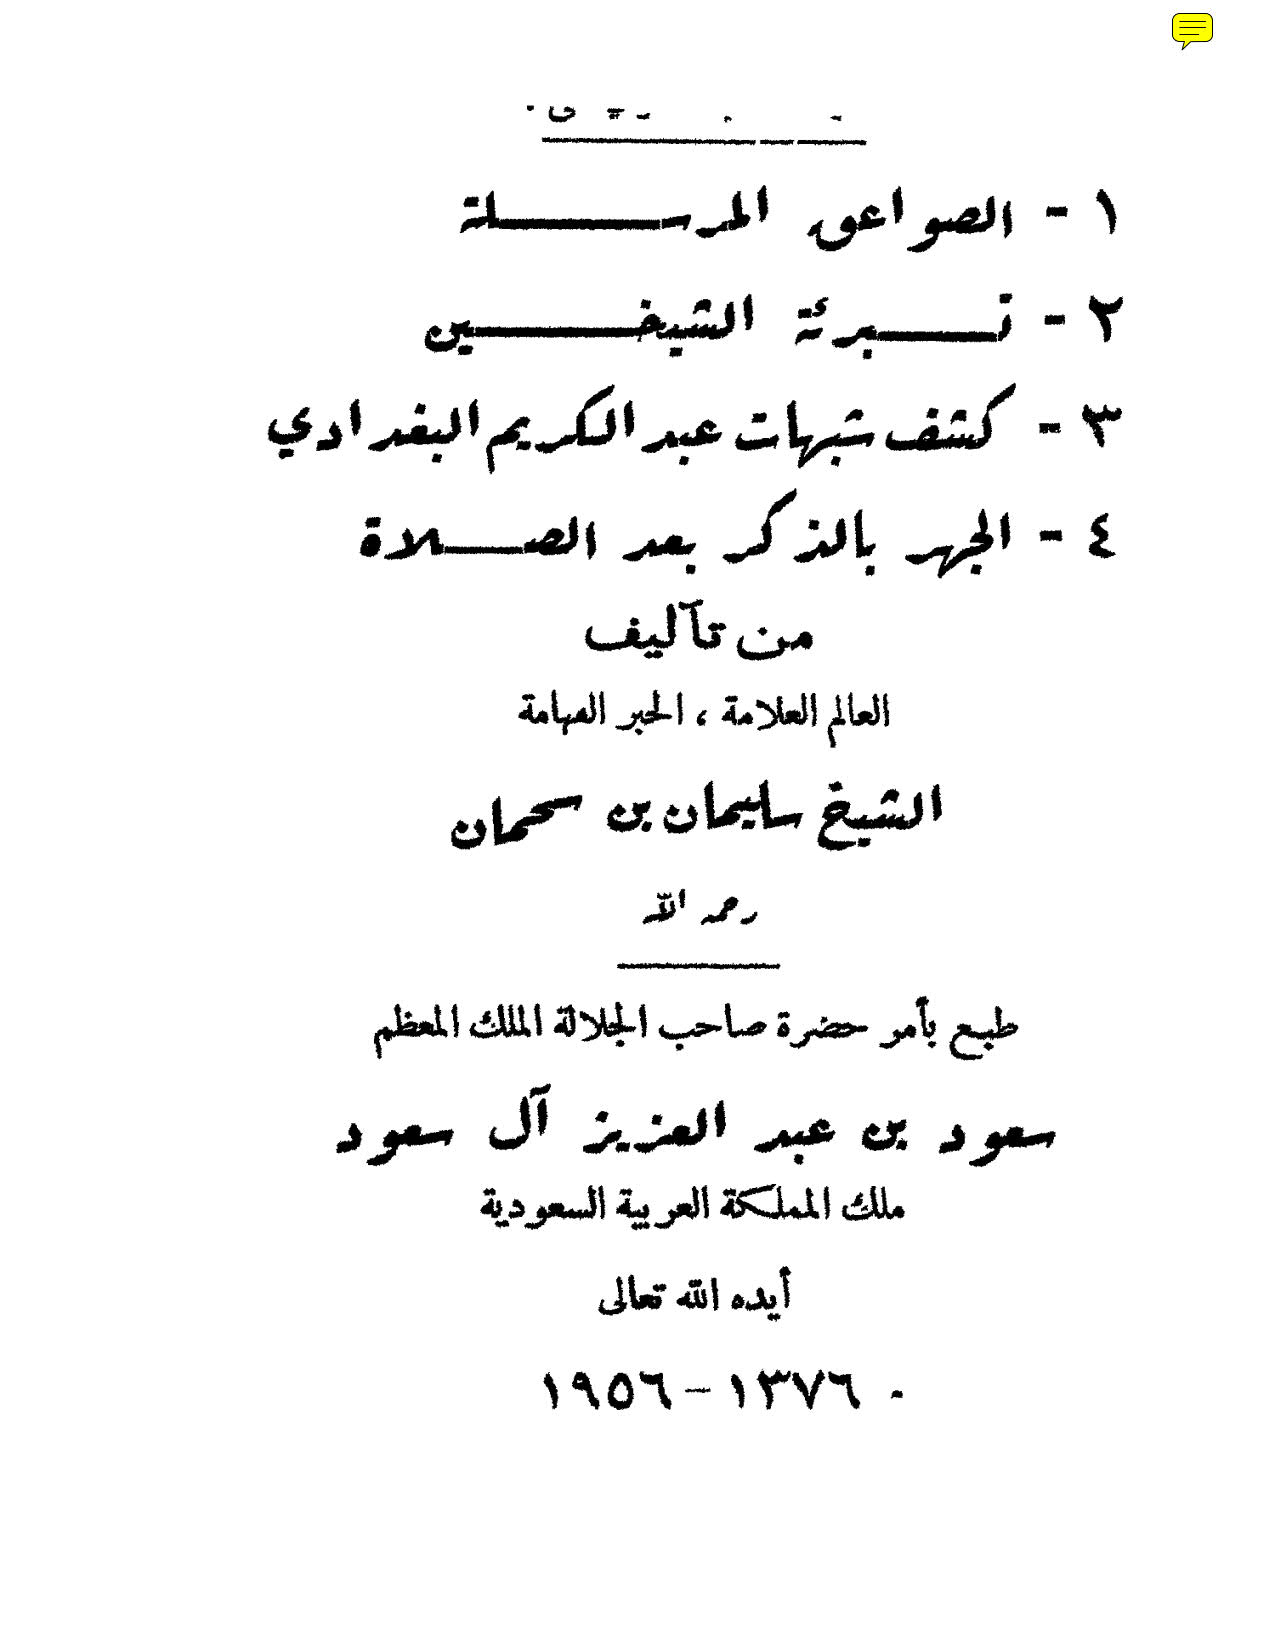 الصواعق المرسلة الشهابية على الشبه الداحضة الشامية ( طبعة _ 1956م )